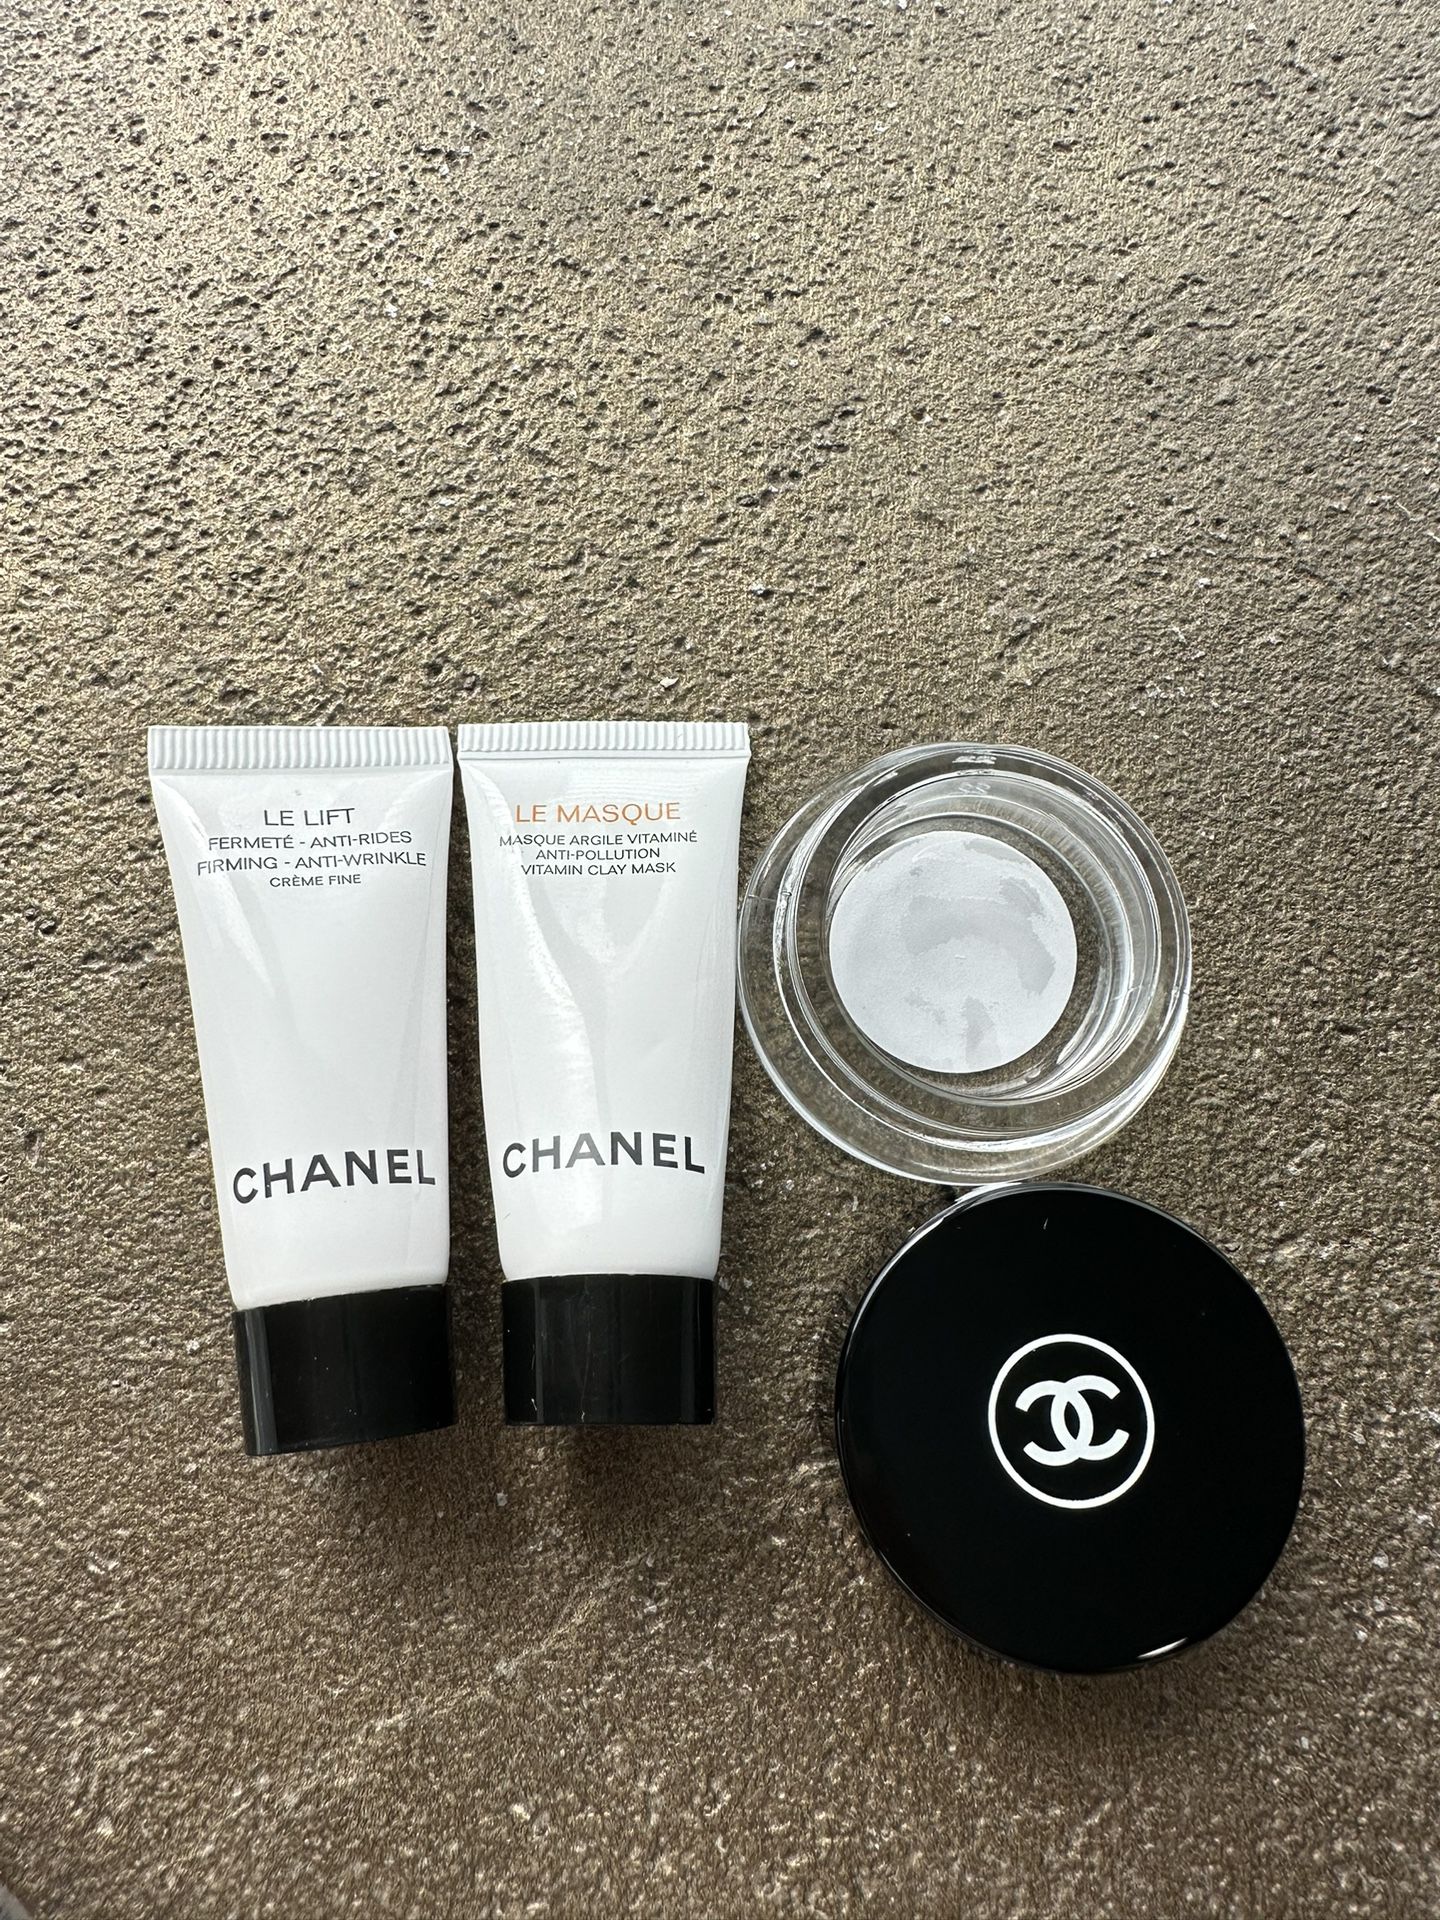 Chanel Le Lift Anti-Rides & Anti-Wrinkle Fine Creme, 50g / 1.7 oz